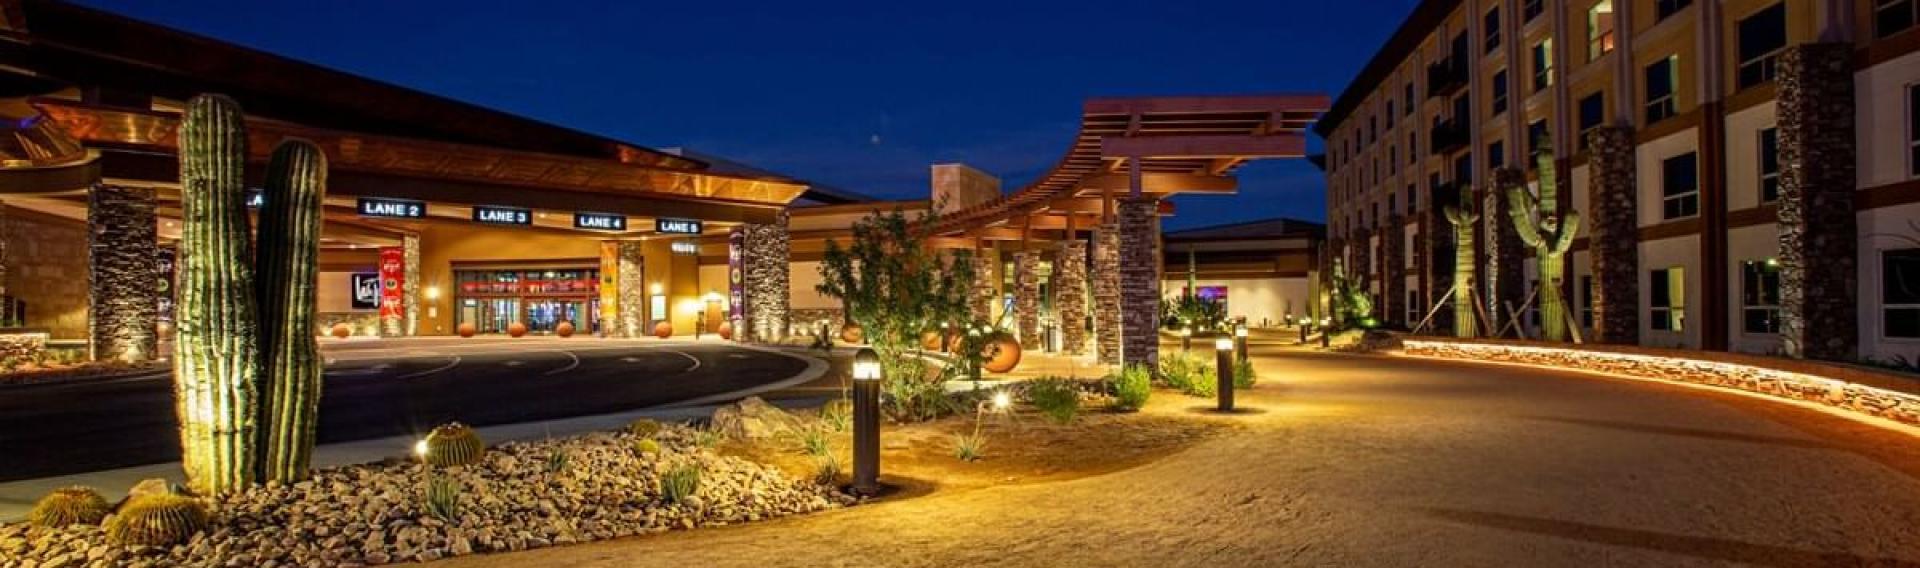 Scottsdale, Arizona We-Ko-Pa Casino Resort 